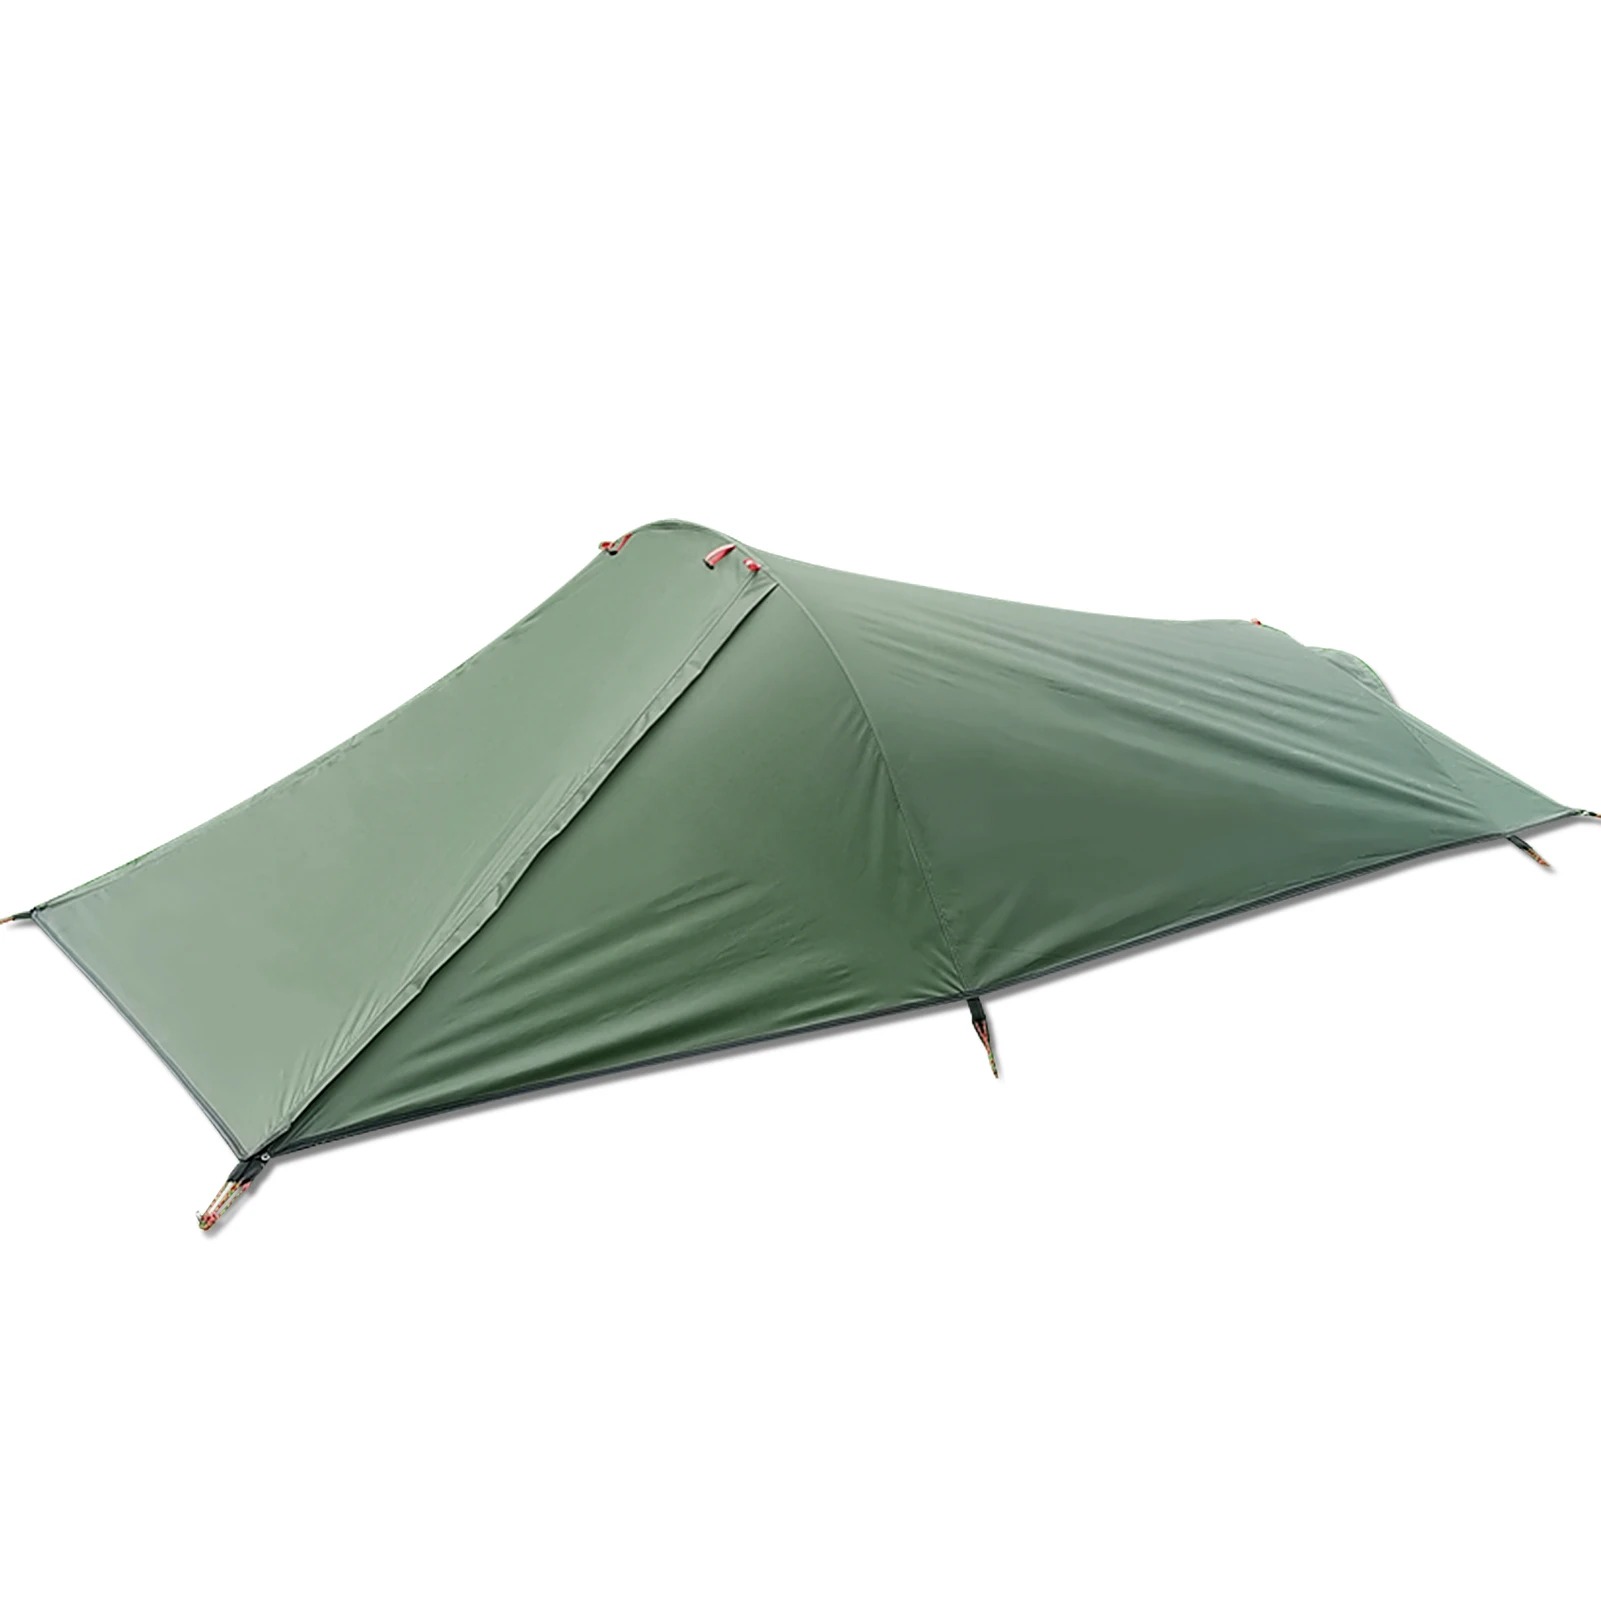 

Ультралегкая палатка для кемпинга на открытом воздухе, палатка для одного человека, палатка для кемпинга, водонепроницаемая палатка, портативный спальный мешок, палатка против комаров